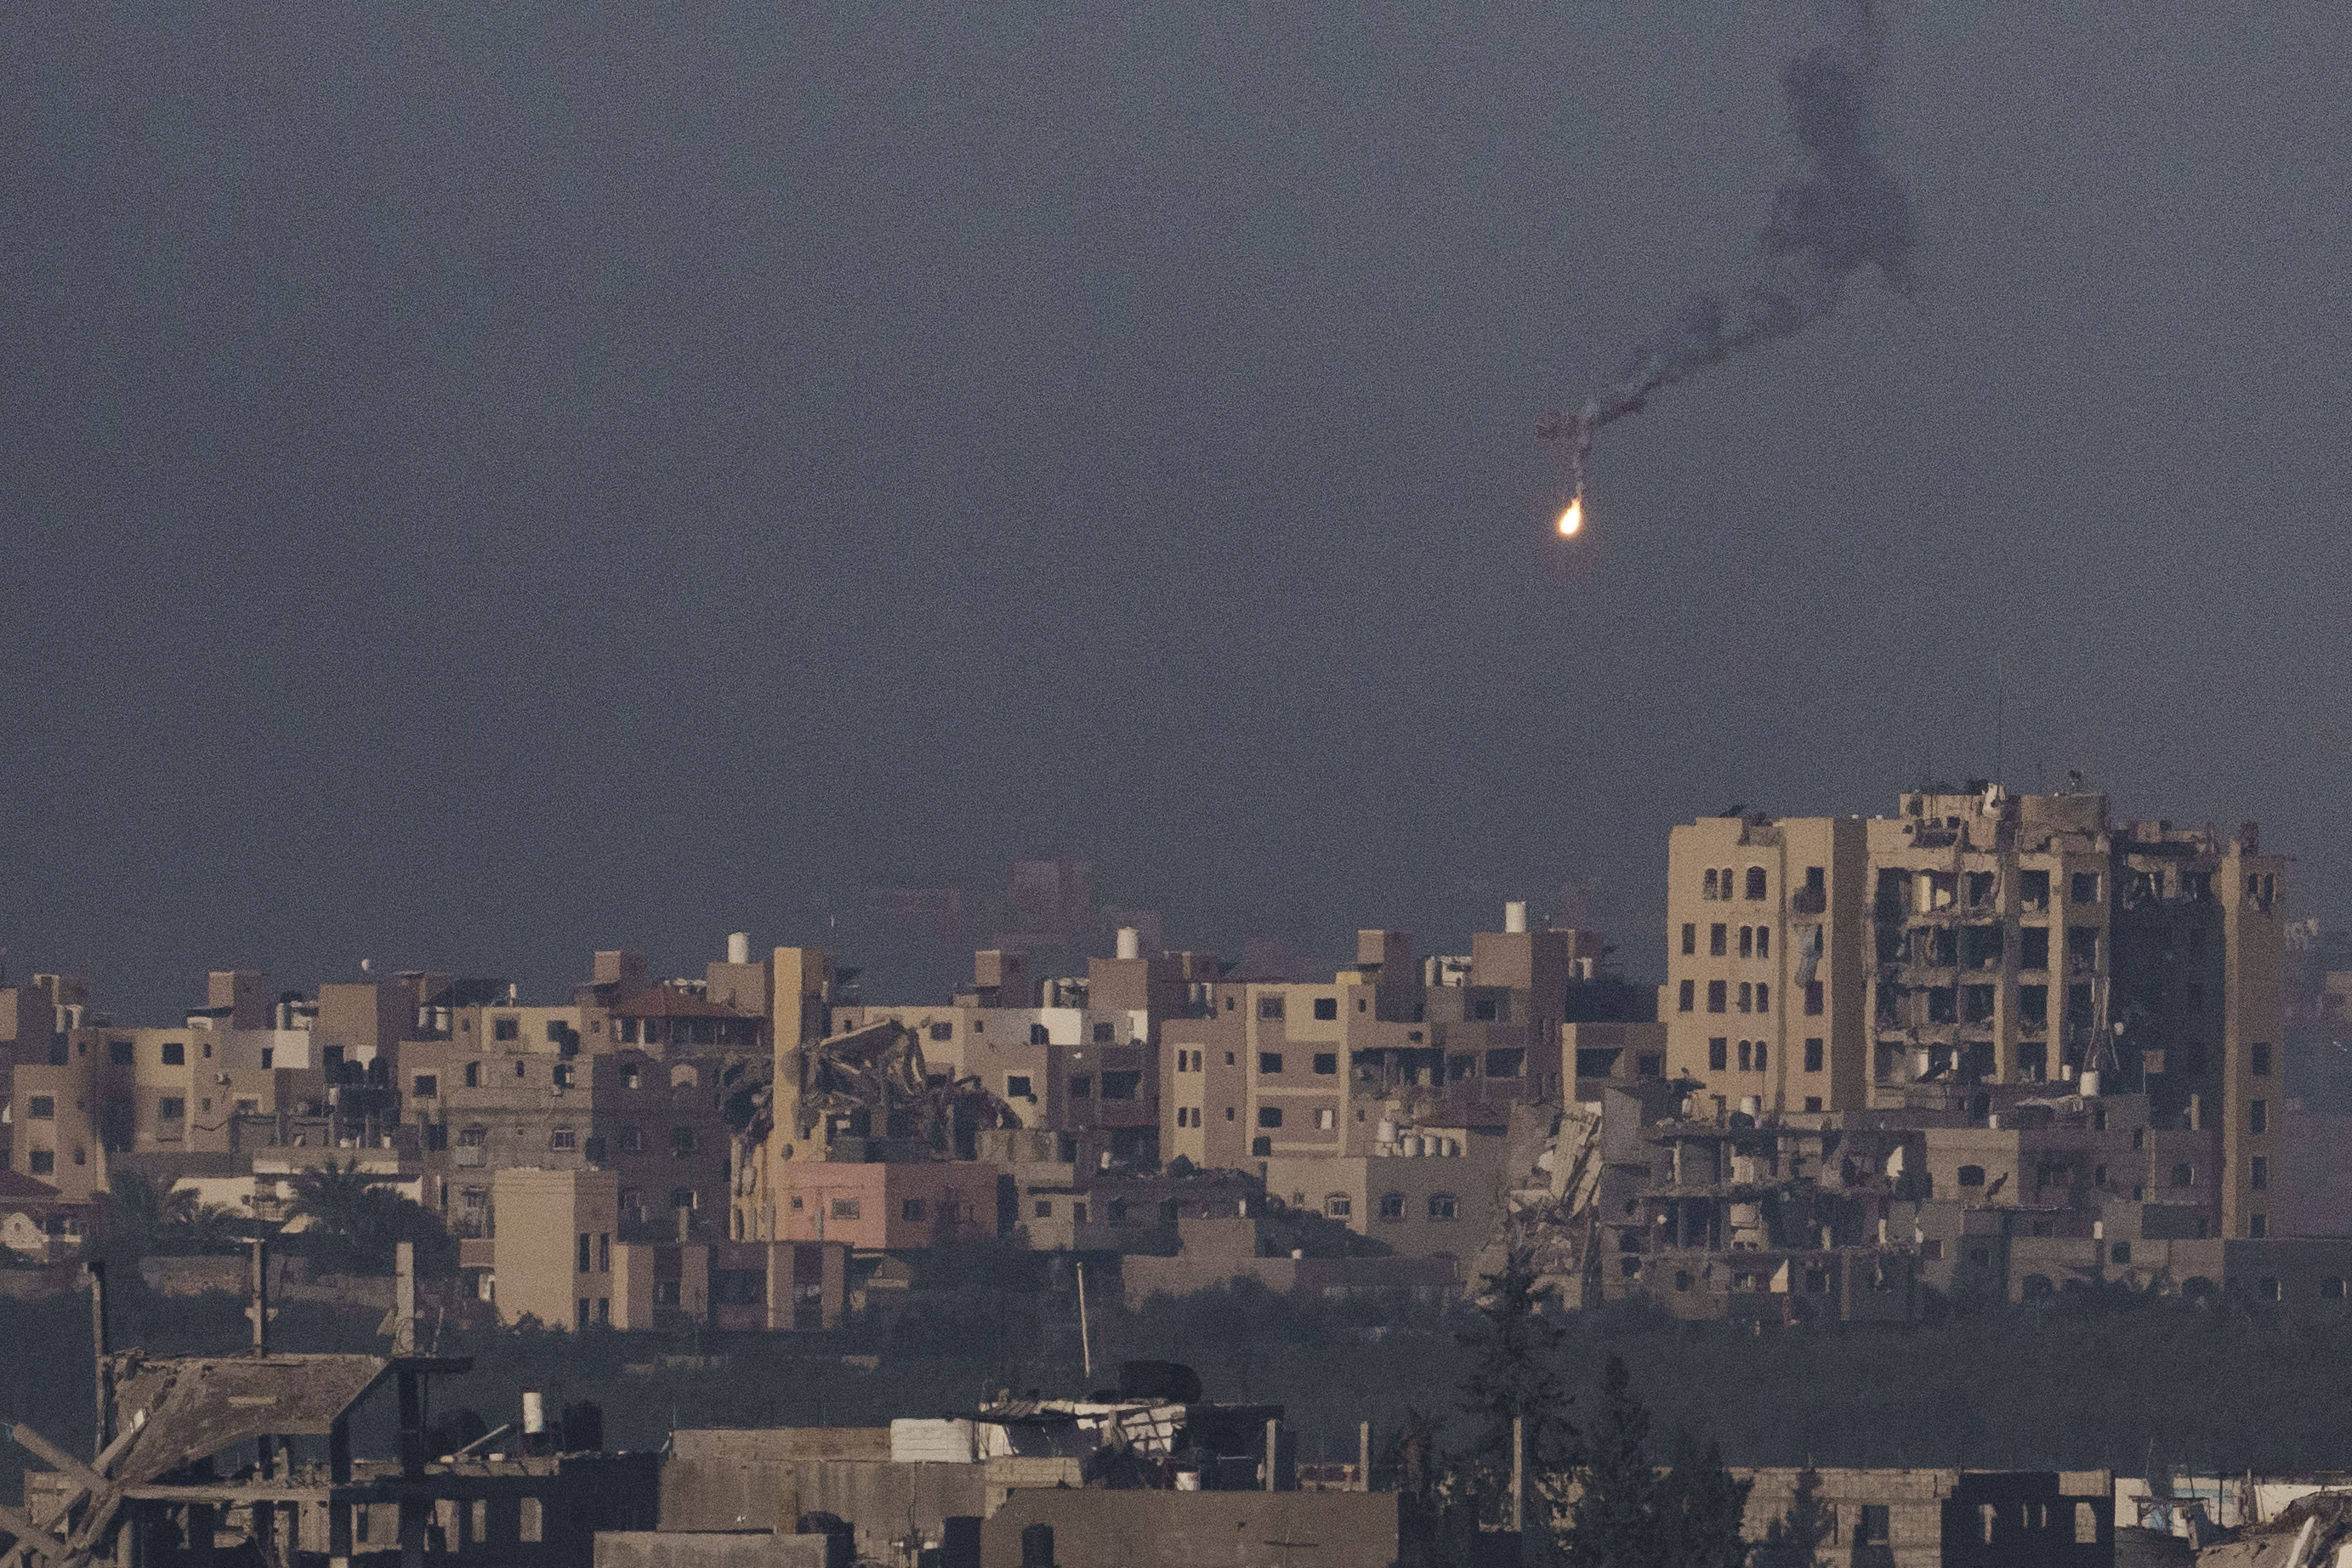 Un helicóptero Apache israelí dispara un misil en dirección a la Franja de Gaza.